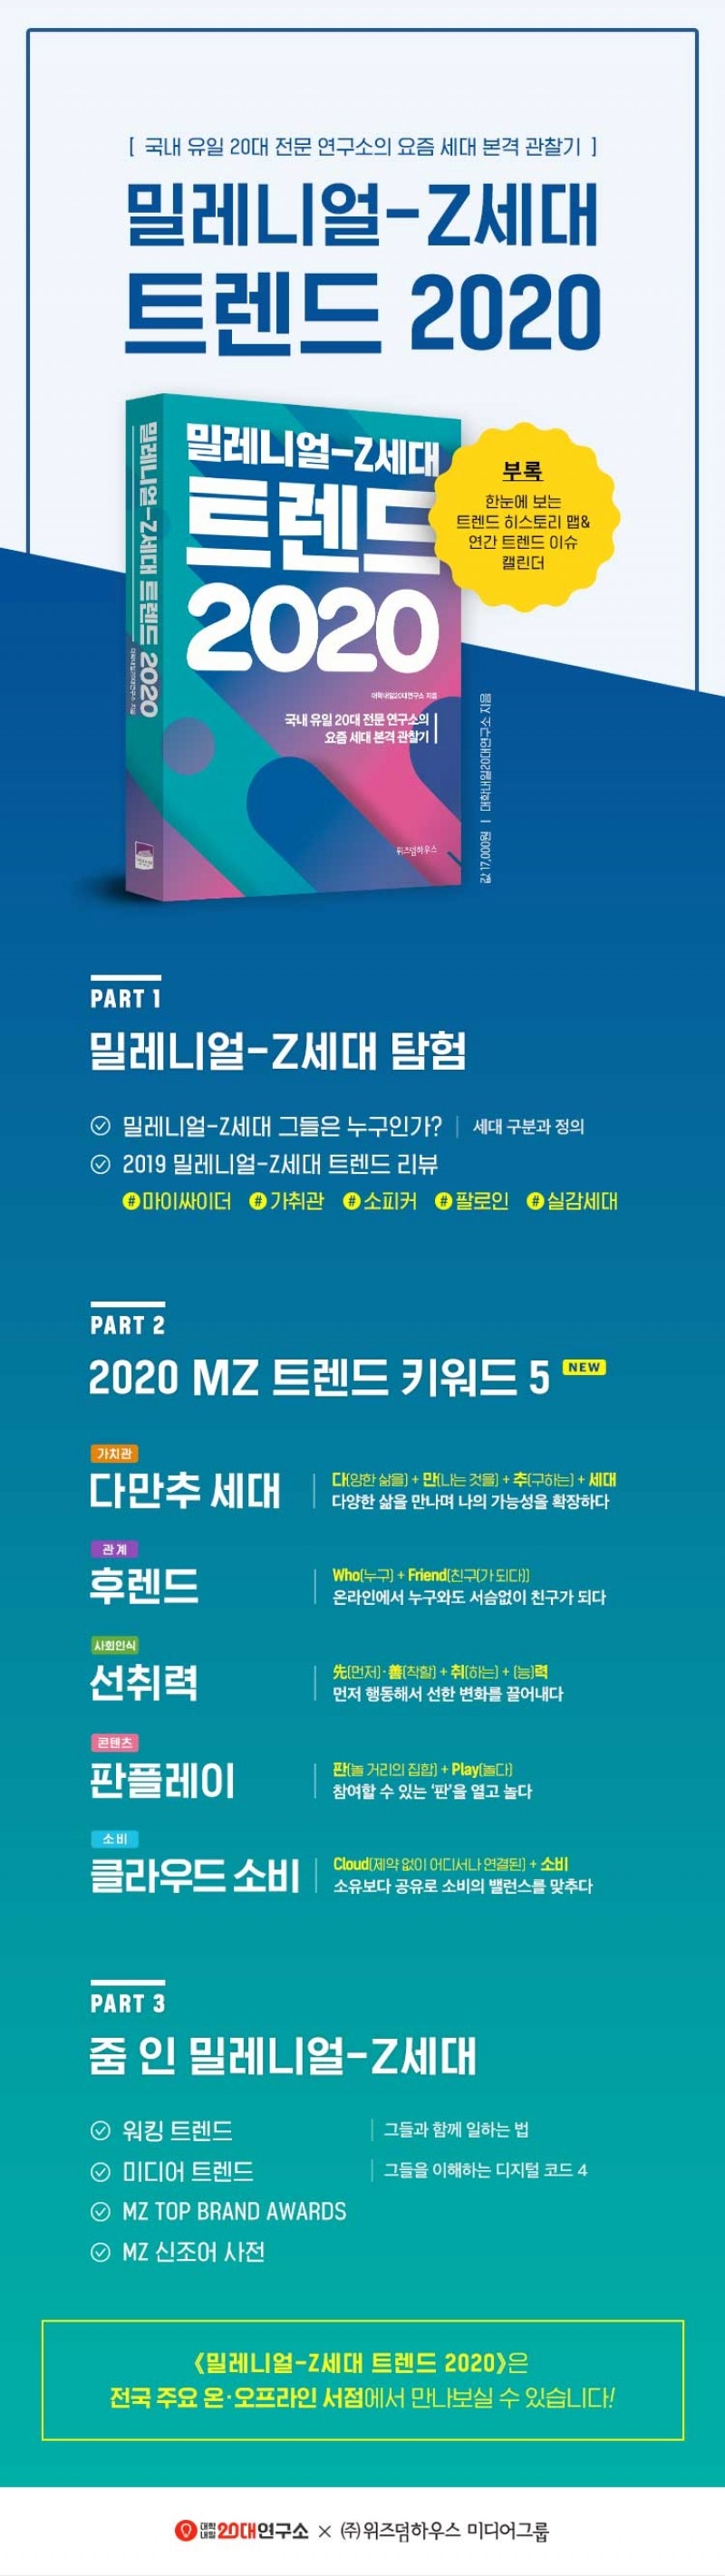 2020년 소비 트렌드는 '클라우드 소비'… 밀레니얼-Z세대 트렌드 5가지